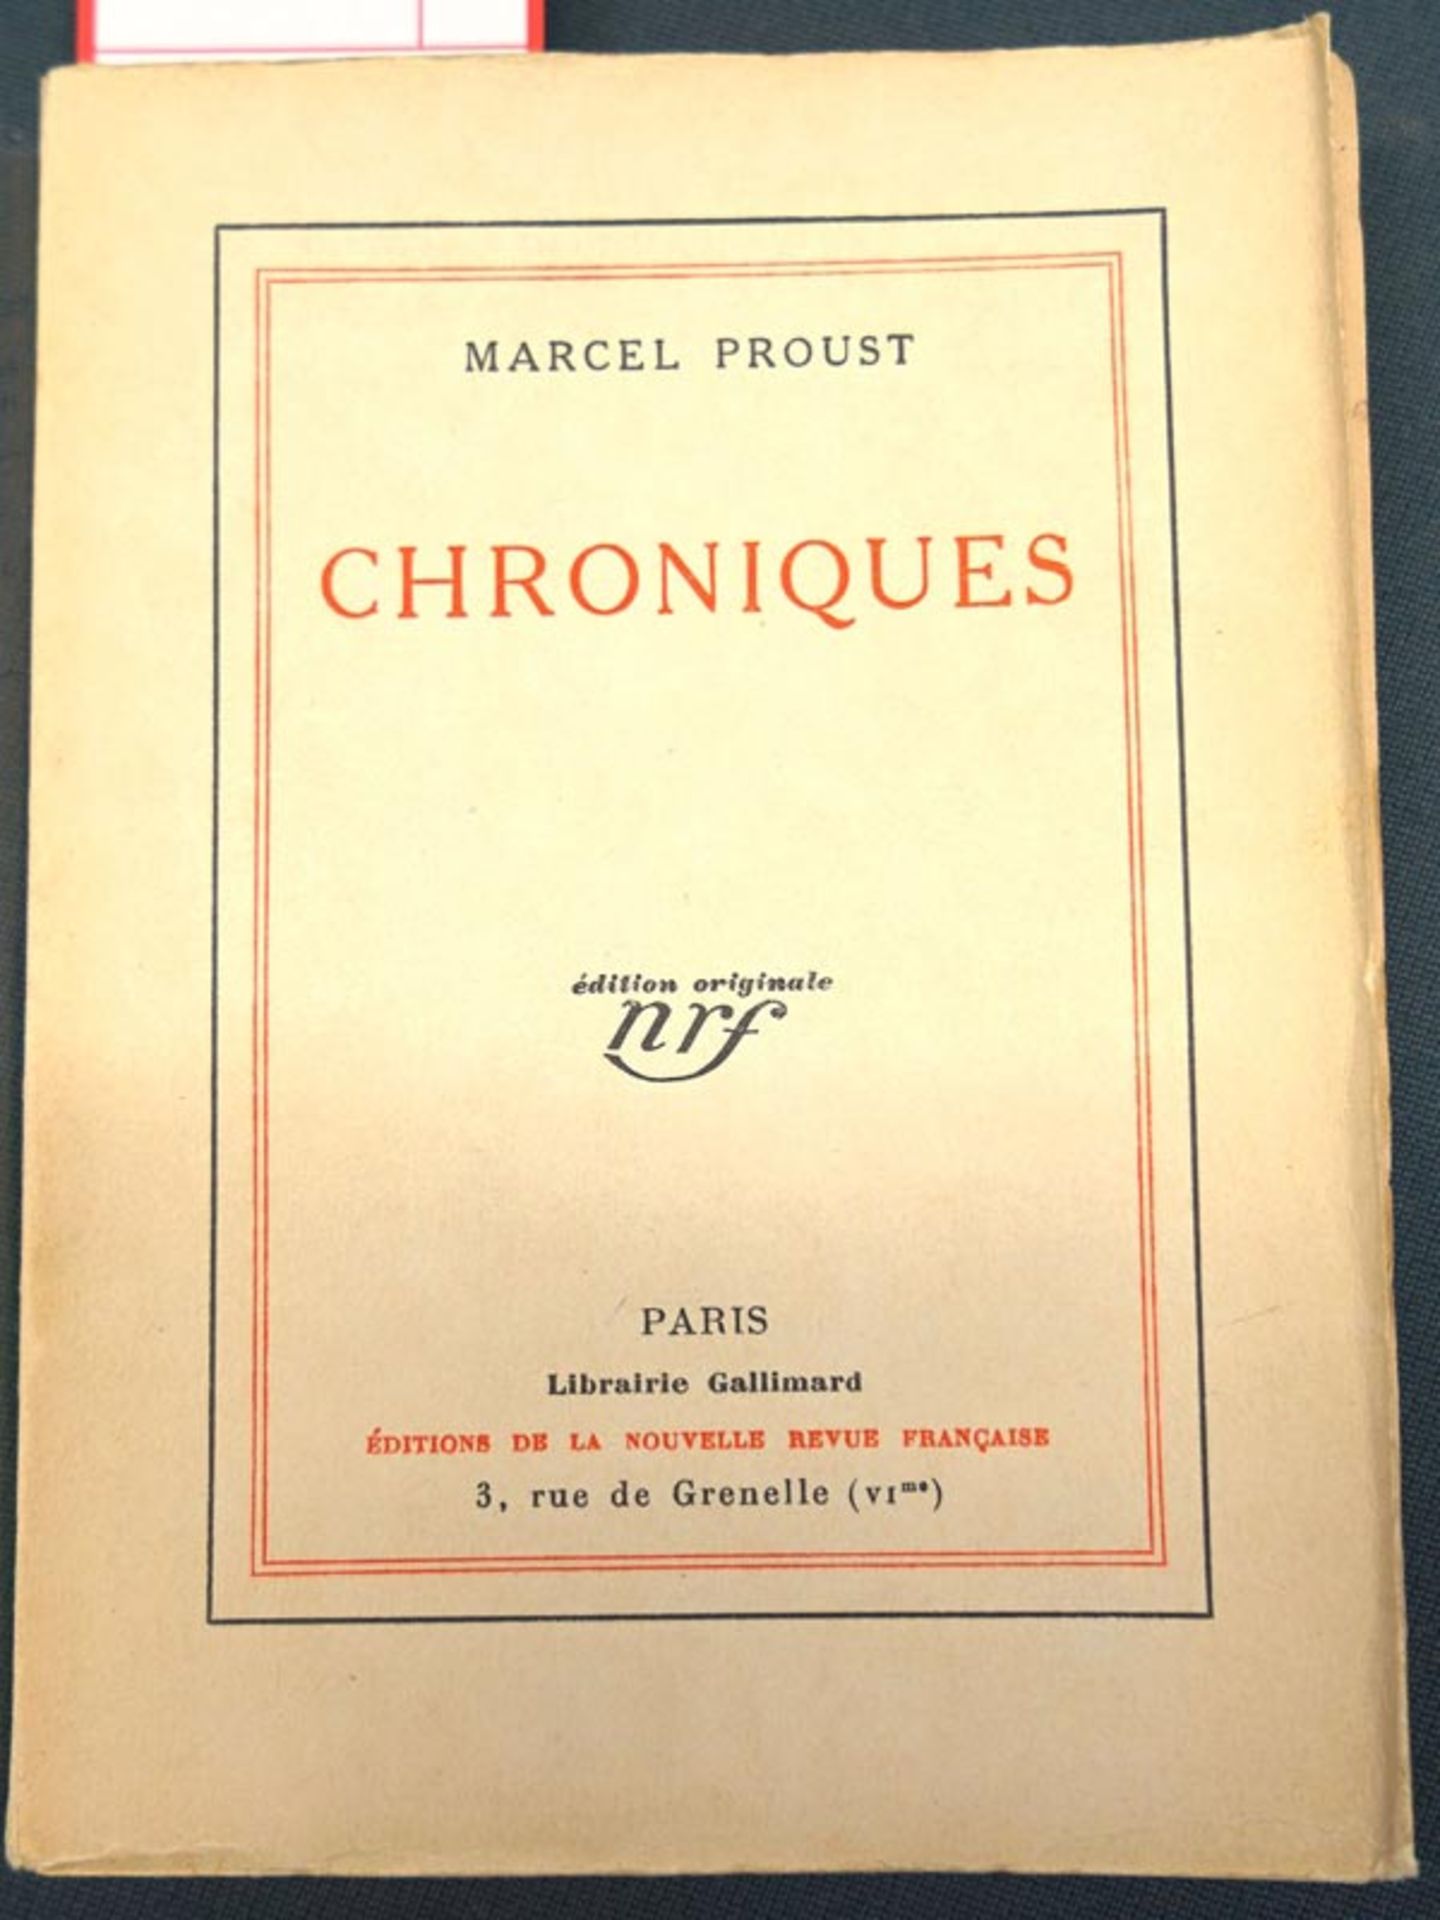 Proust, Marcel: Chroniques